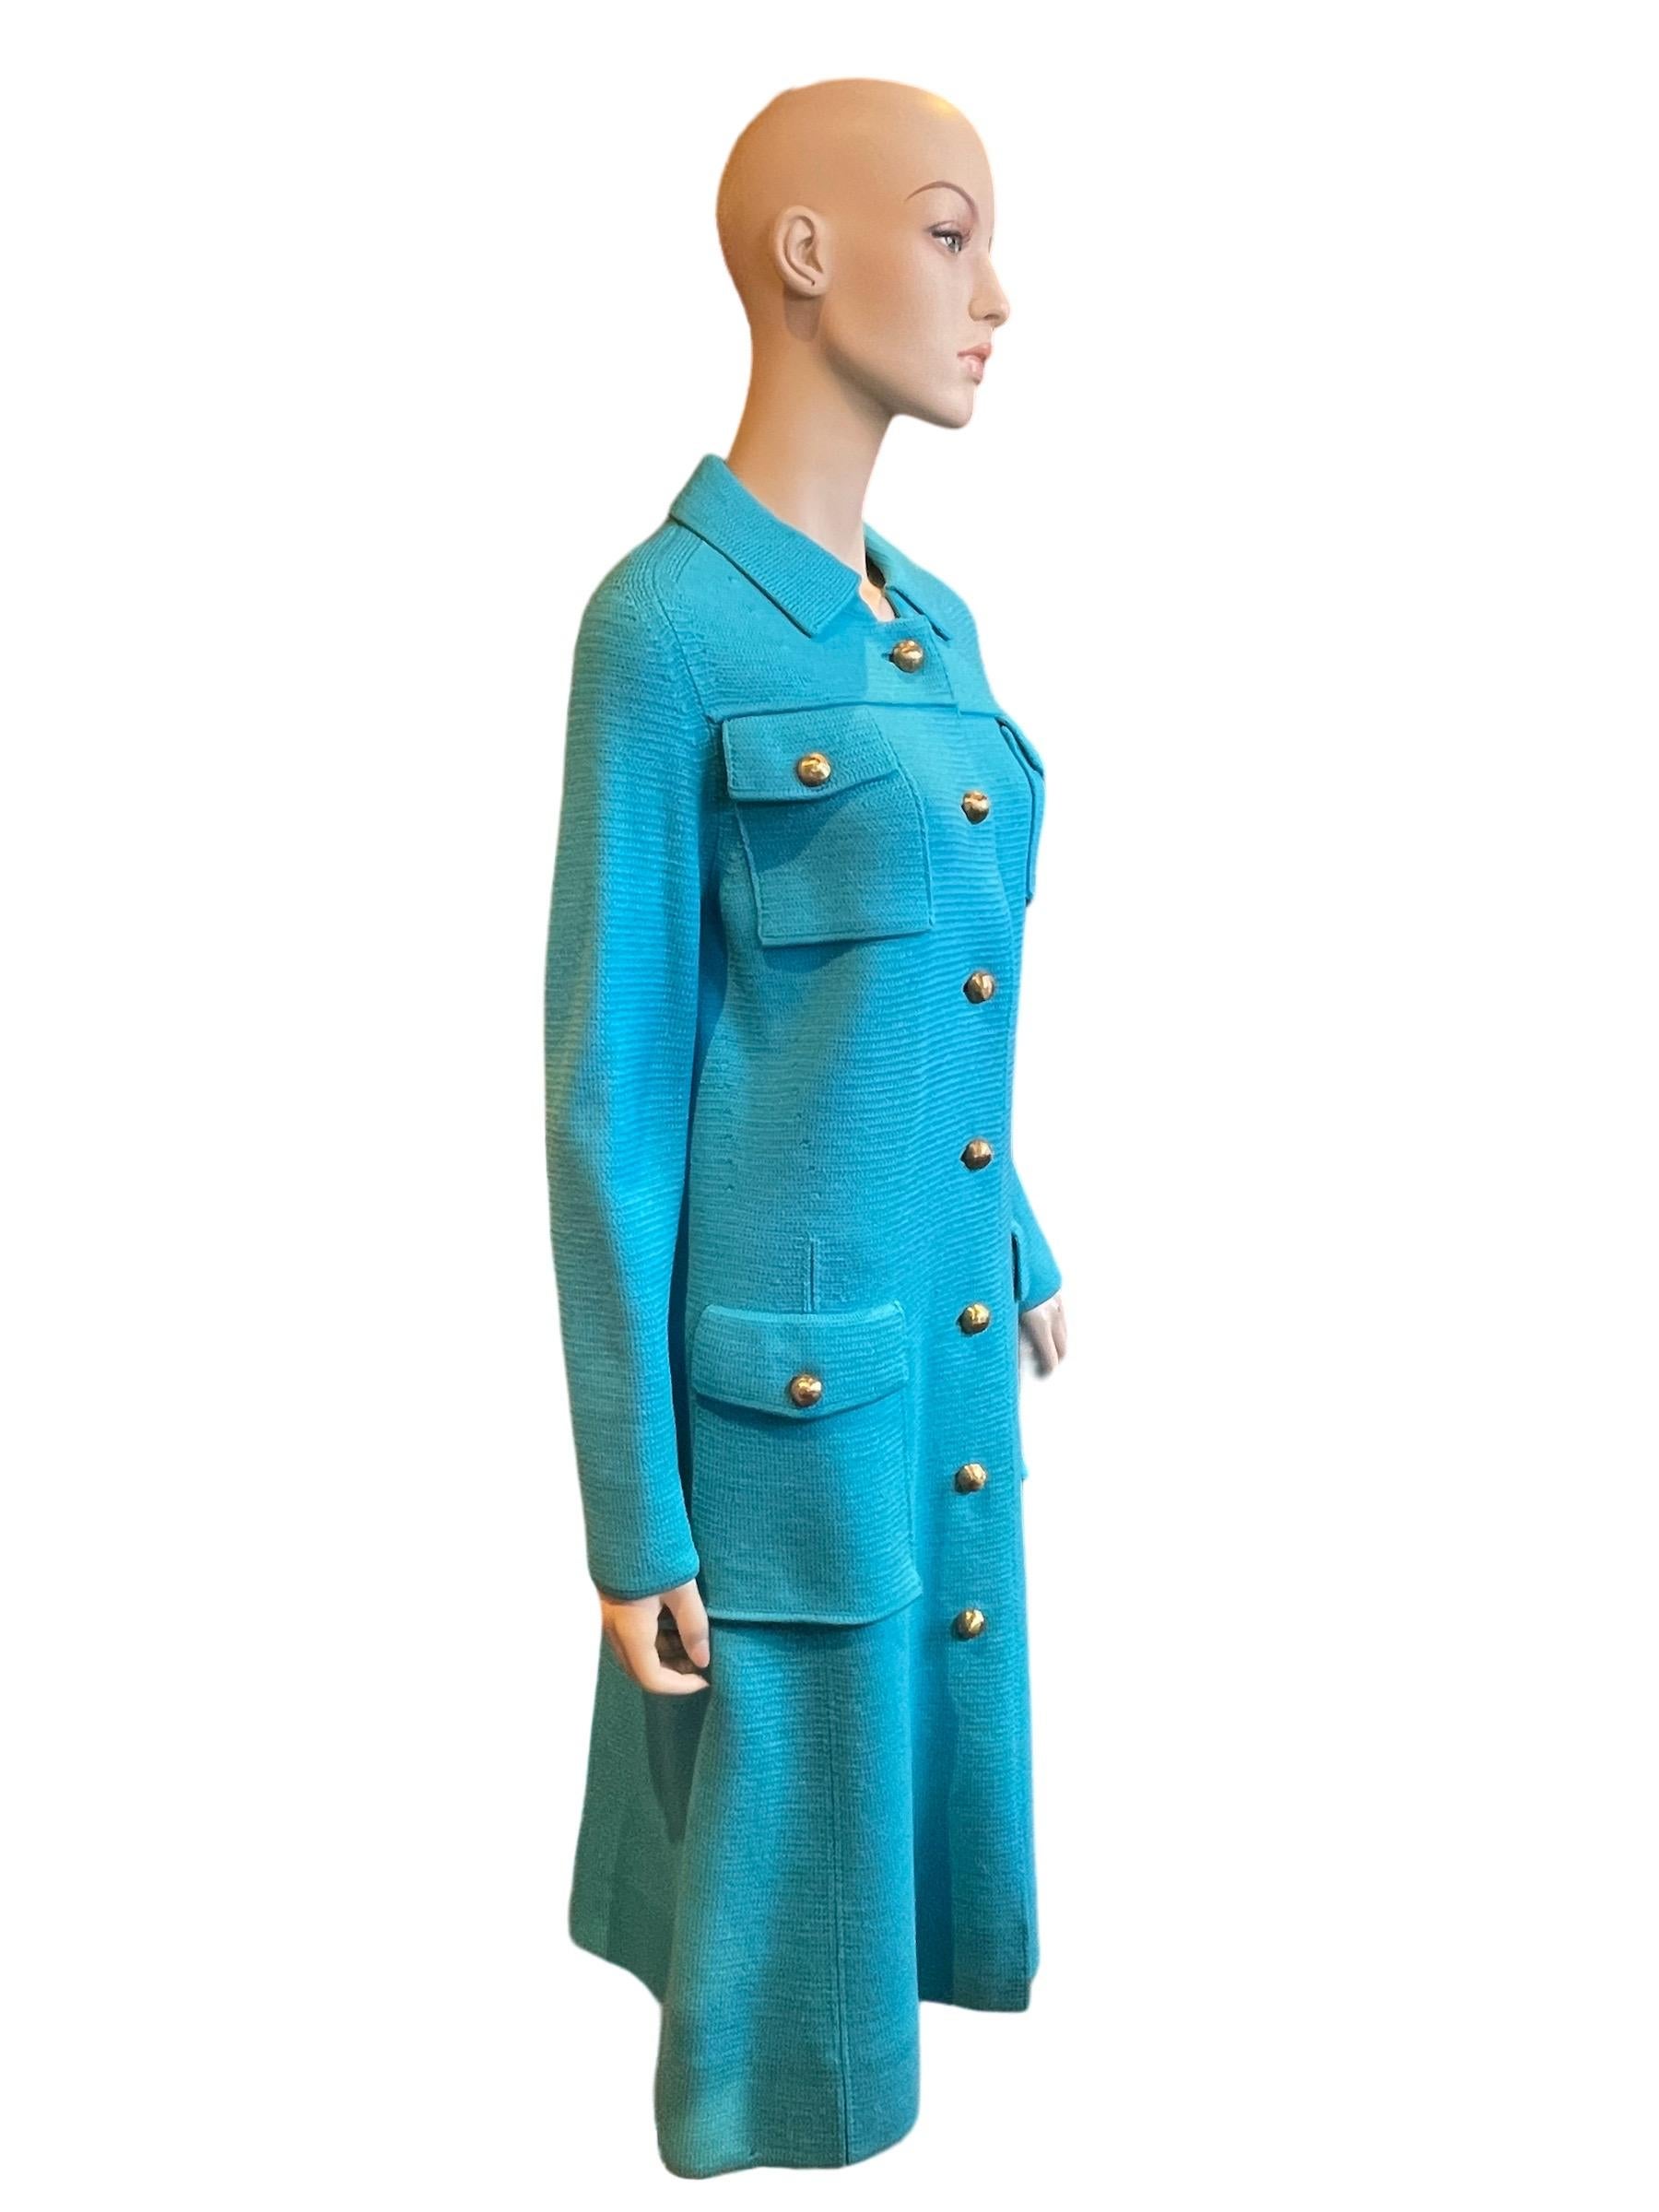 Albertina Roma - Manteau long turquoise avec boutons dorés, années 1960

Un superbe manteau long, avec des boutons dorés. En excellent état ! 

